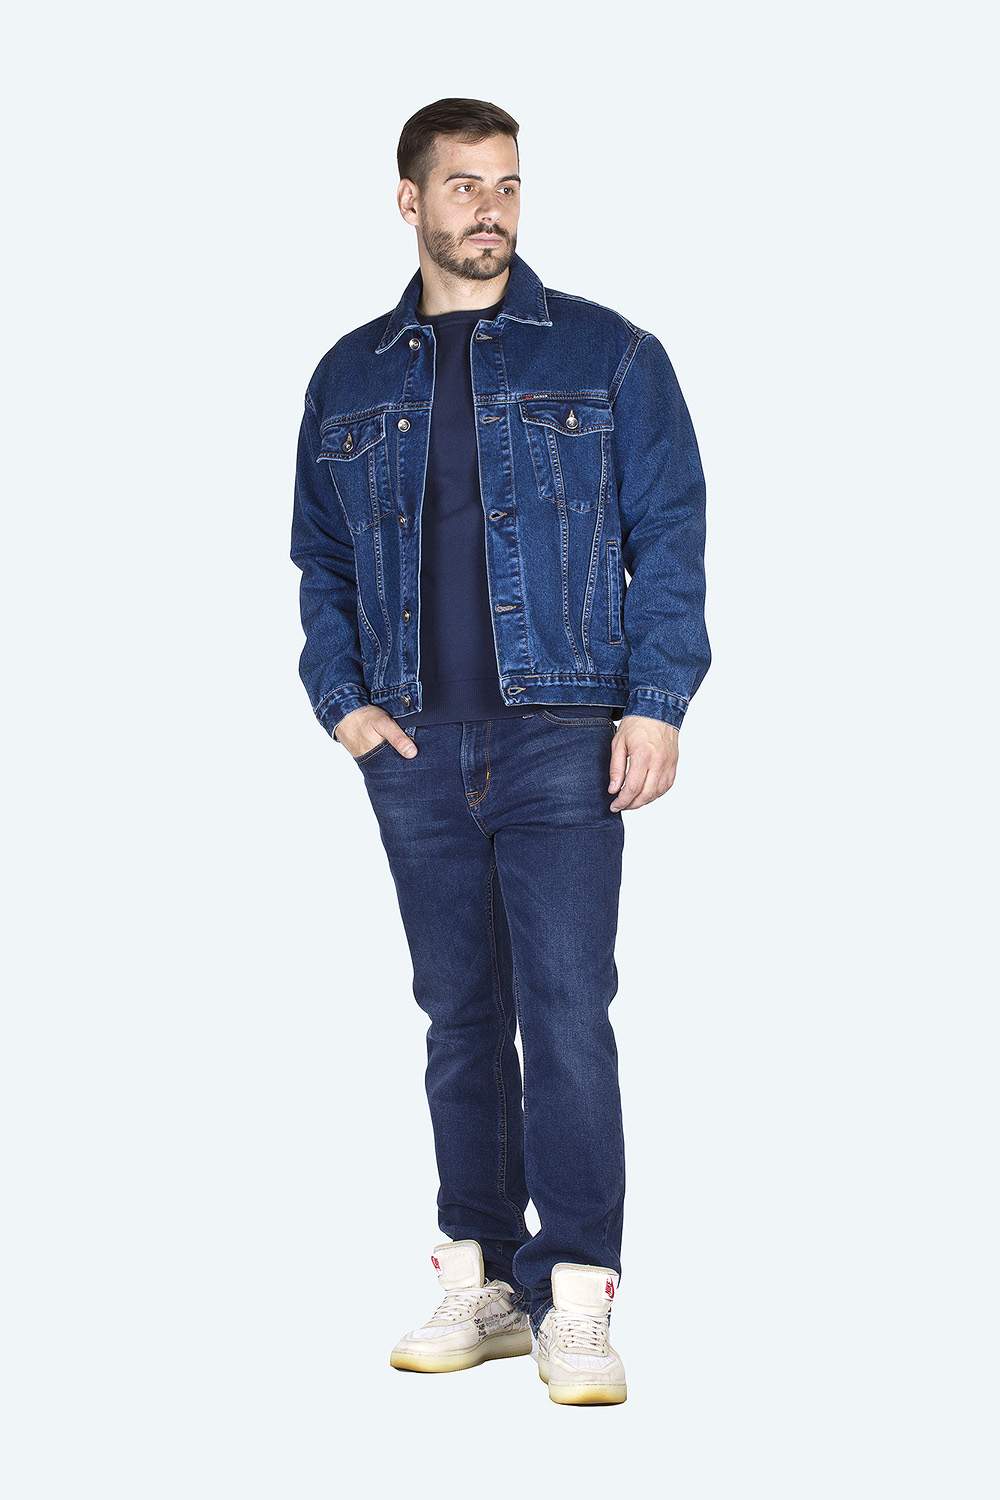 Джинсовая куртка мужская Dairos GD5060104 синяя M